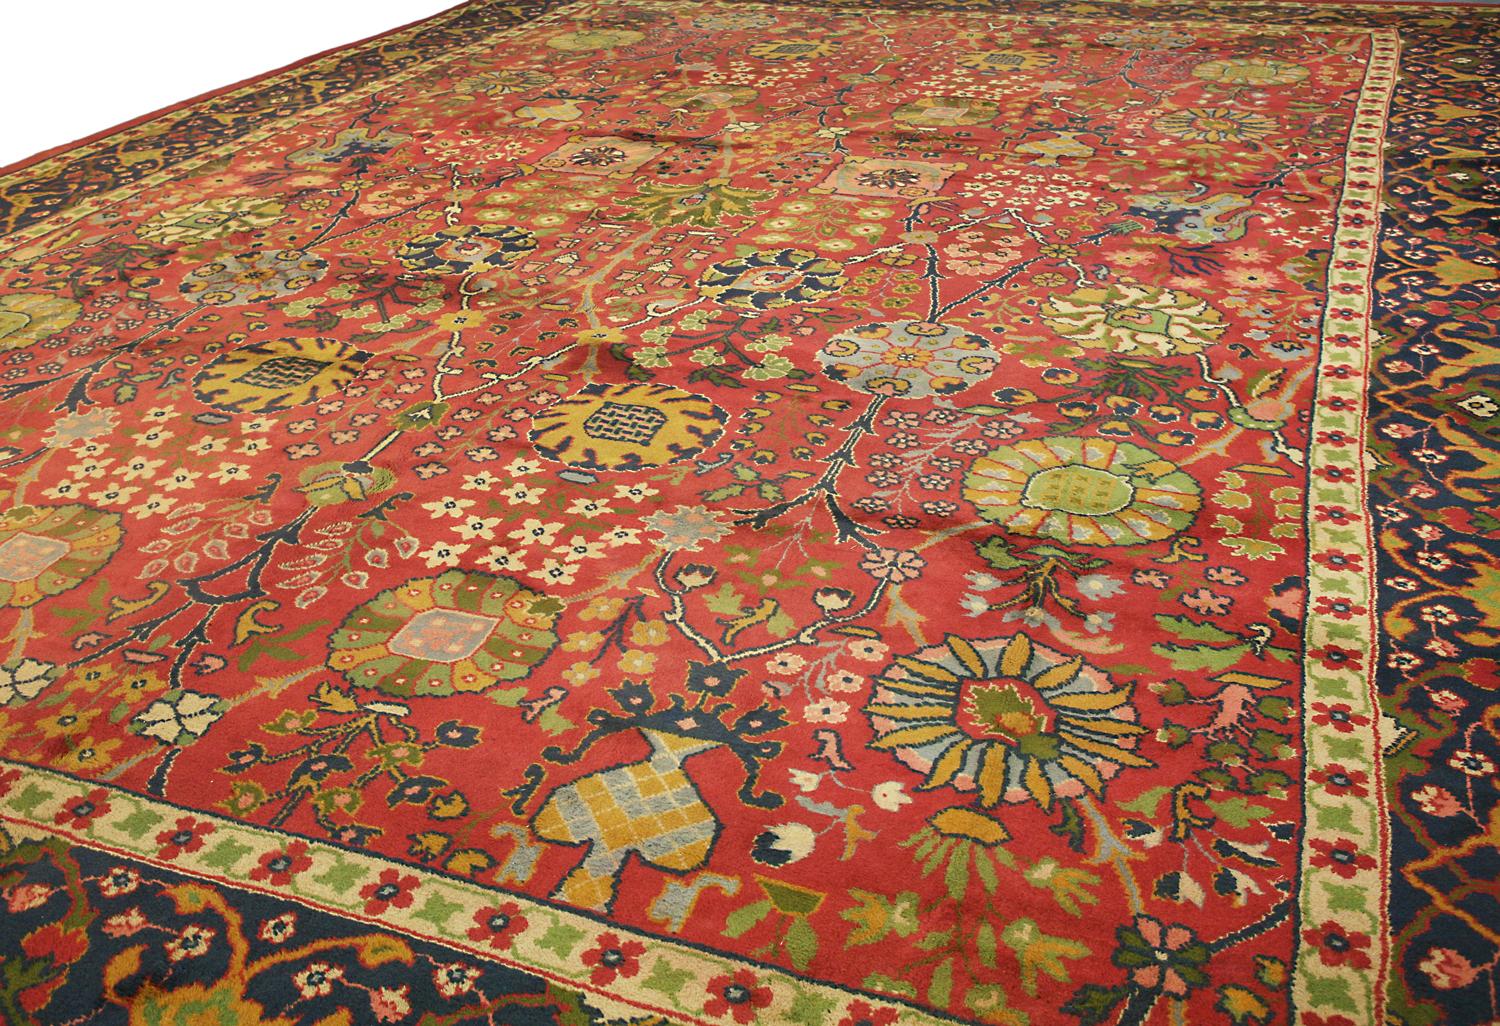 Ein luxuriöser königlicher Teppich mit stilisiertem Motivmuster und All-Over-Feld. Dieser Teppich stammt aus dem schönsten Teil Irlands, Donegal. Ein Gebiet, das trotz seiner Abgeschiedenheit seine Traditionen wie das Knüpfen von Teppichen bewahren